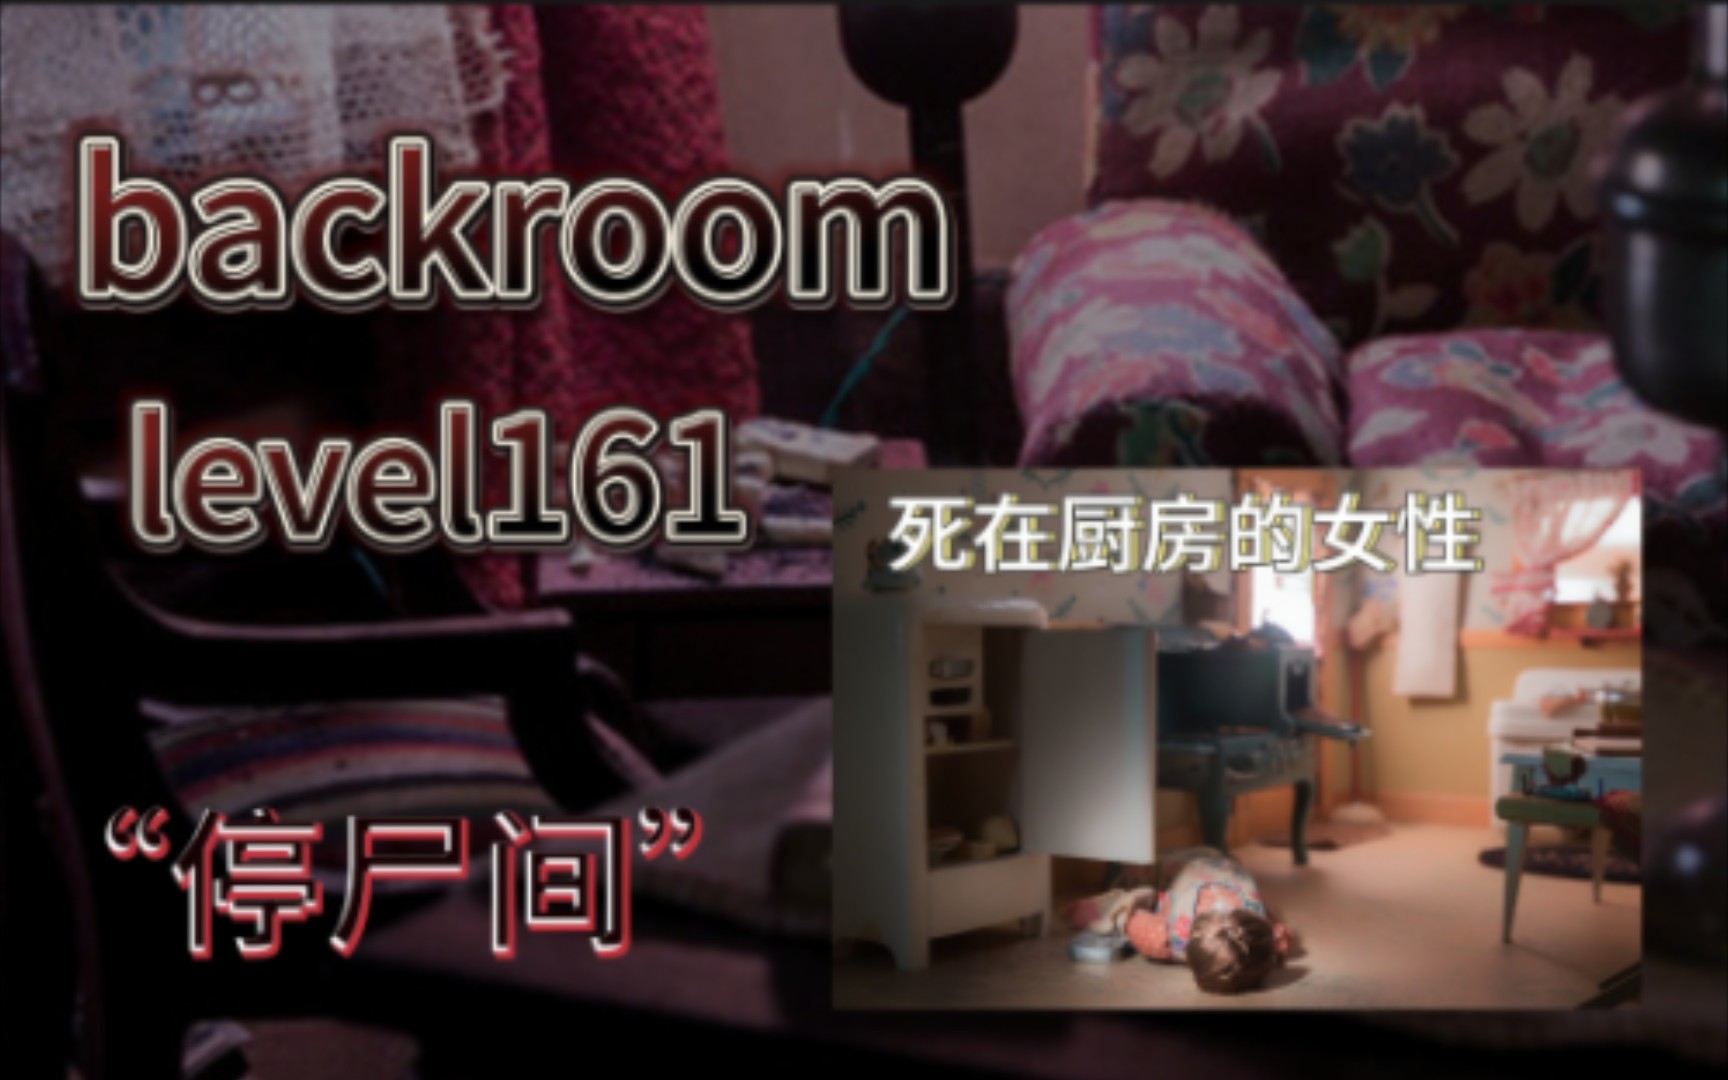 【backroom】level161-“停尸间”各种尸体摆放在房间内，貌似等待着谁的救赎